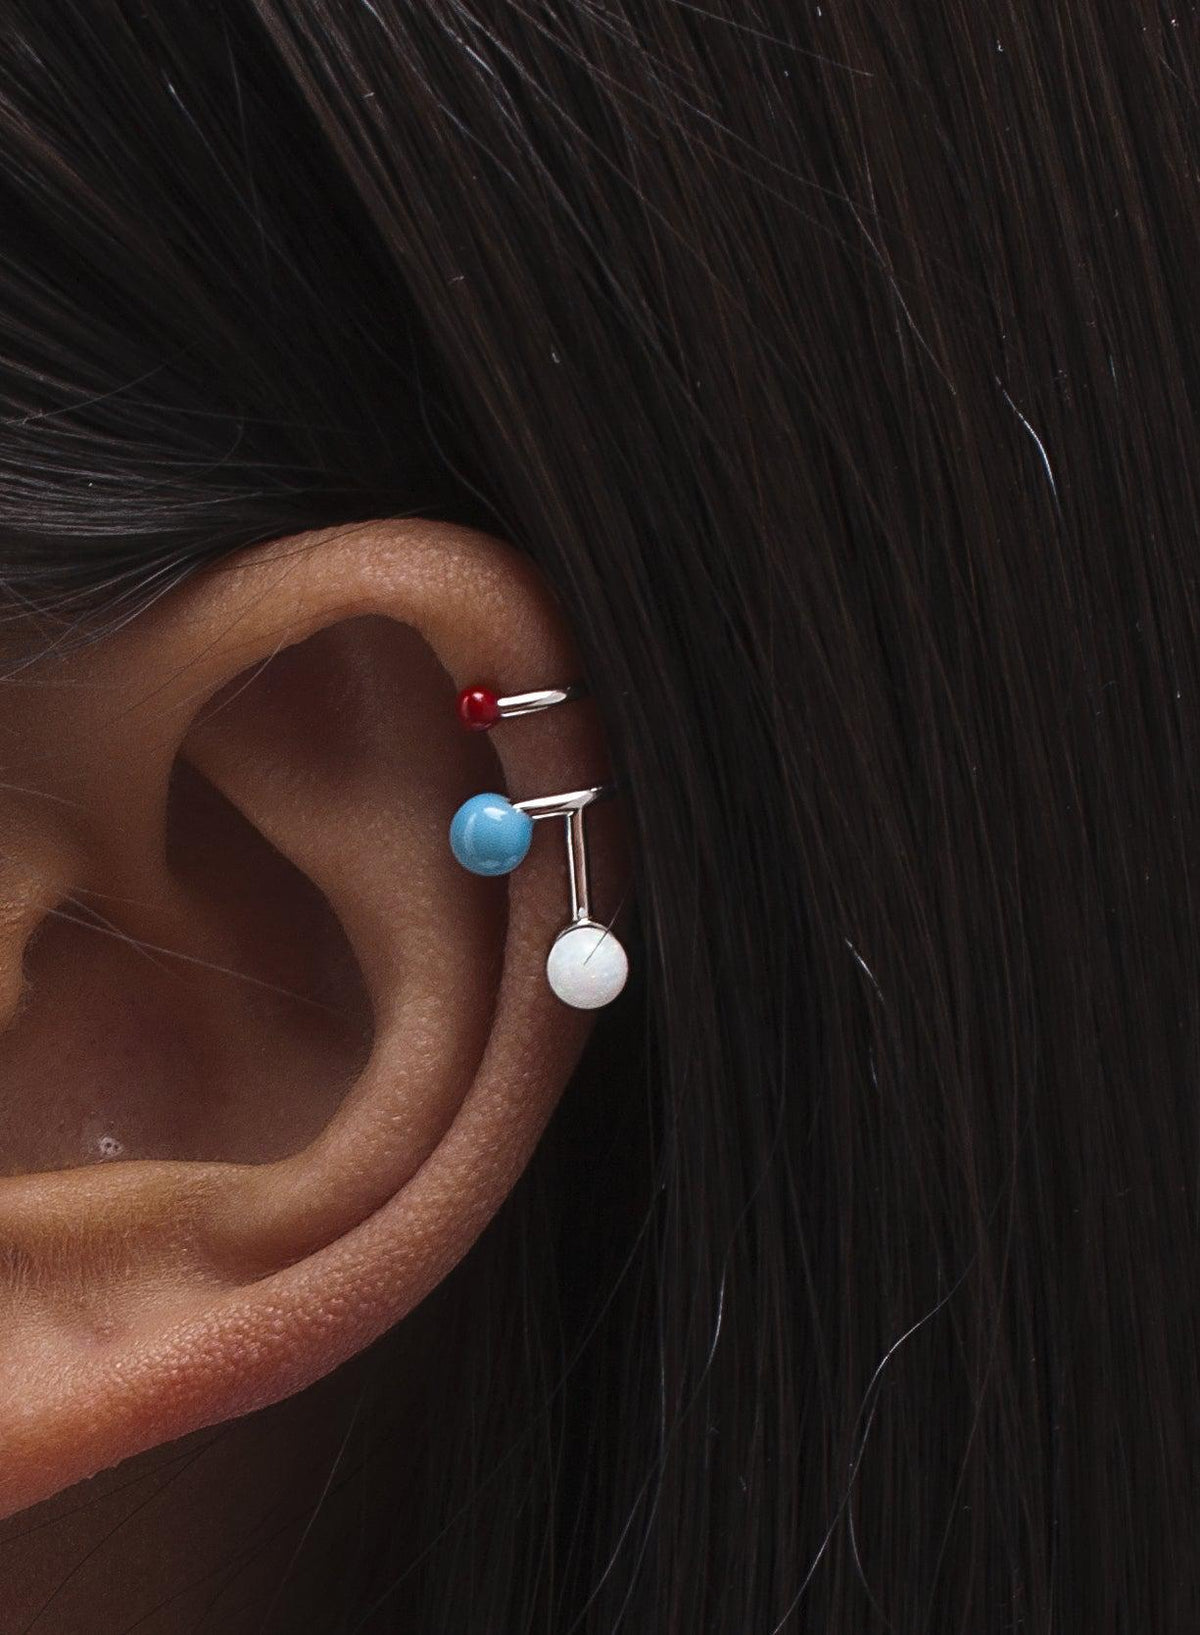 Pendiente · Ear cuff diseño moleculas de esmalte y plata lisa